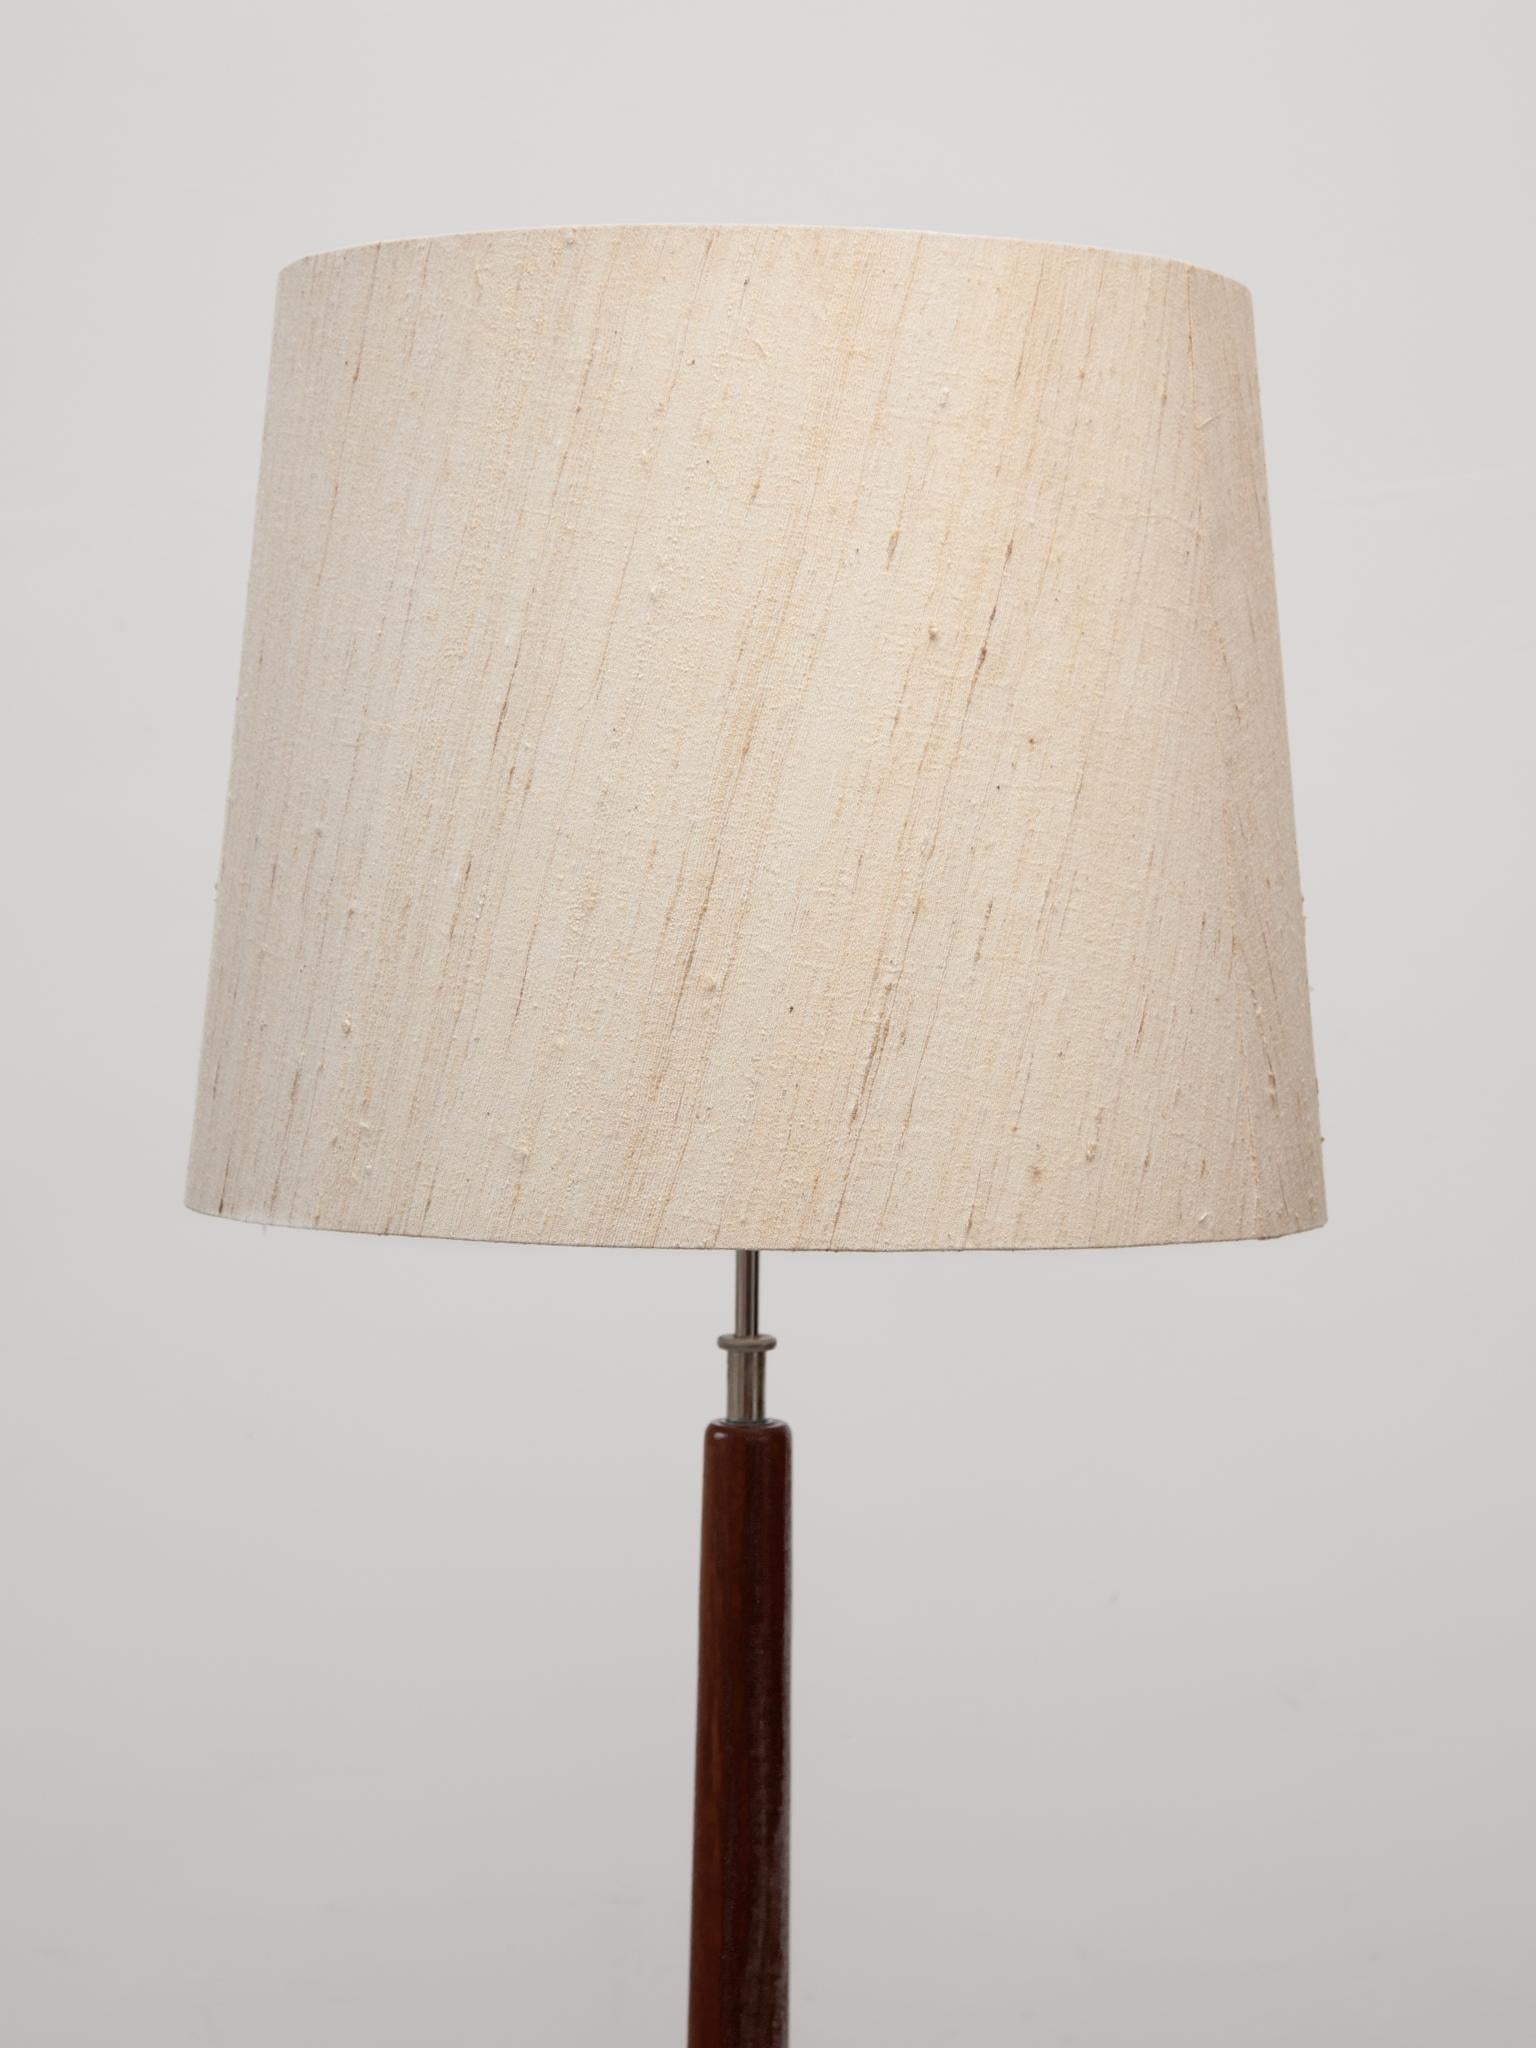 Scandinavian Modern Domus Made in Denmark Solid Teak Floor lamp, 1960s For Sale